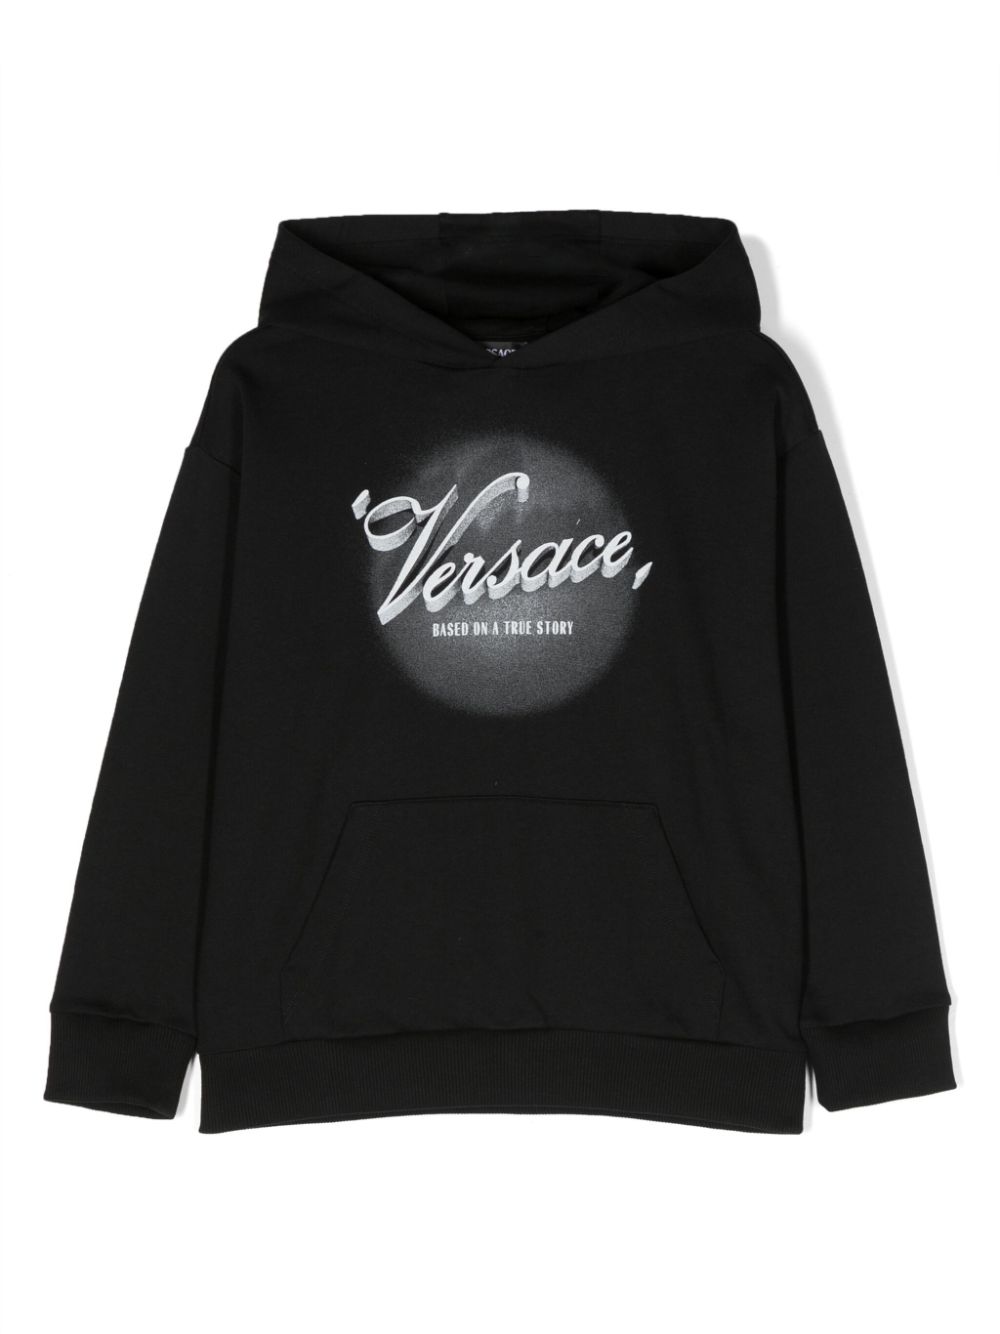 Versace kids hooded sweatshirt